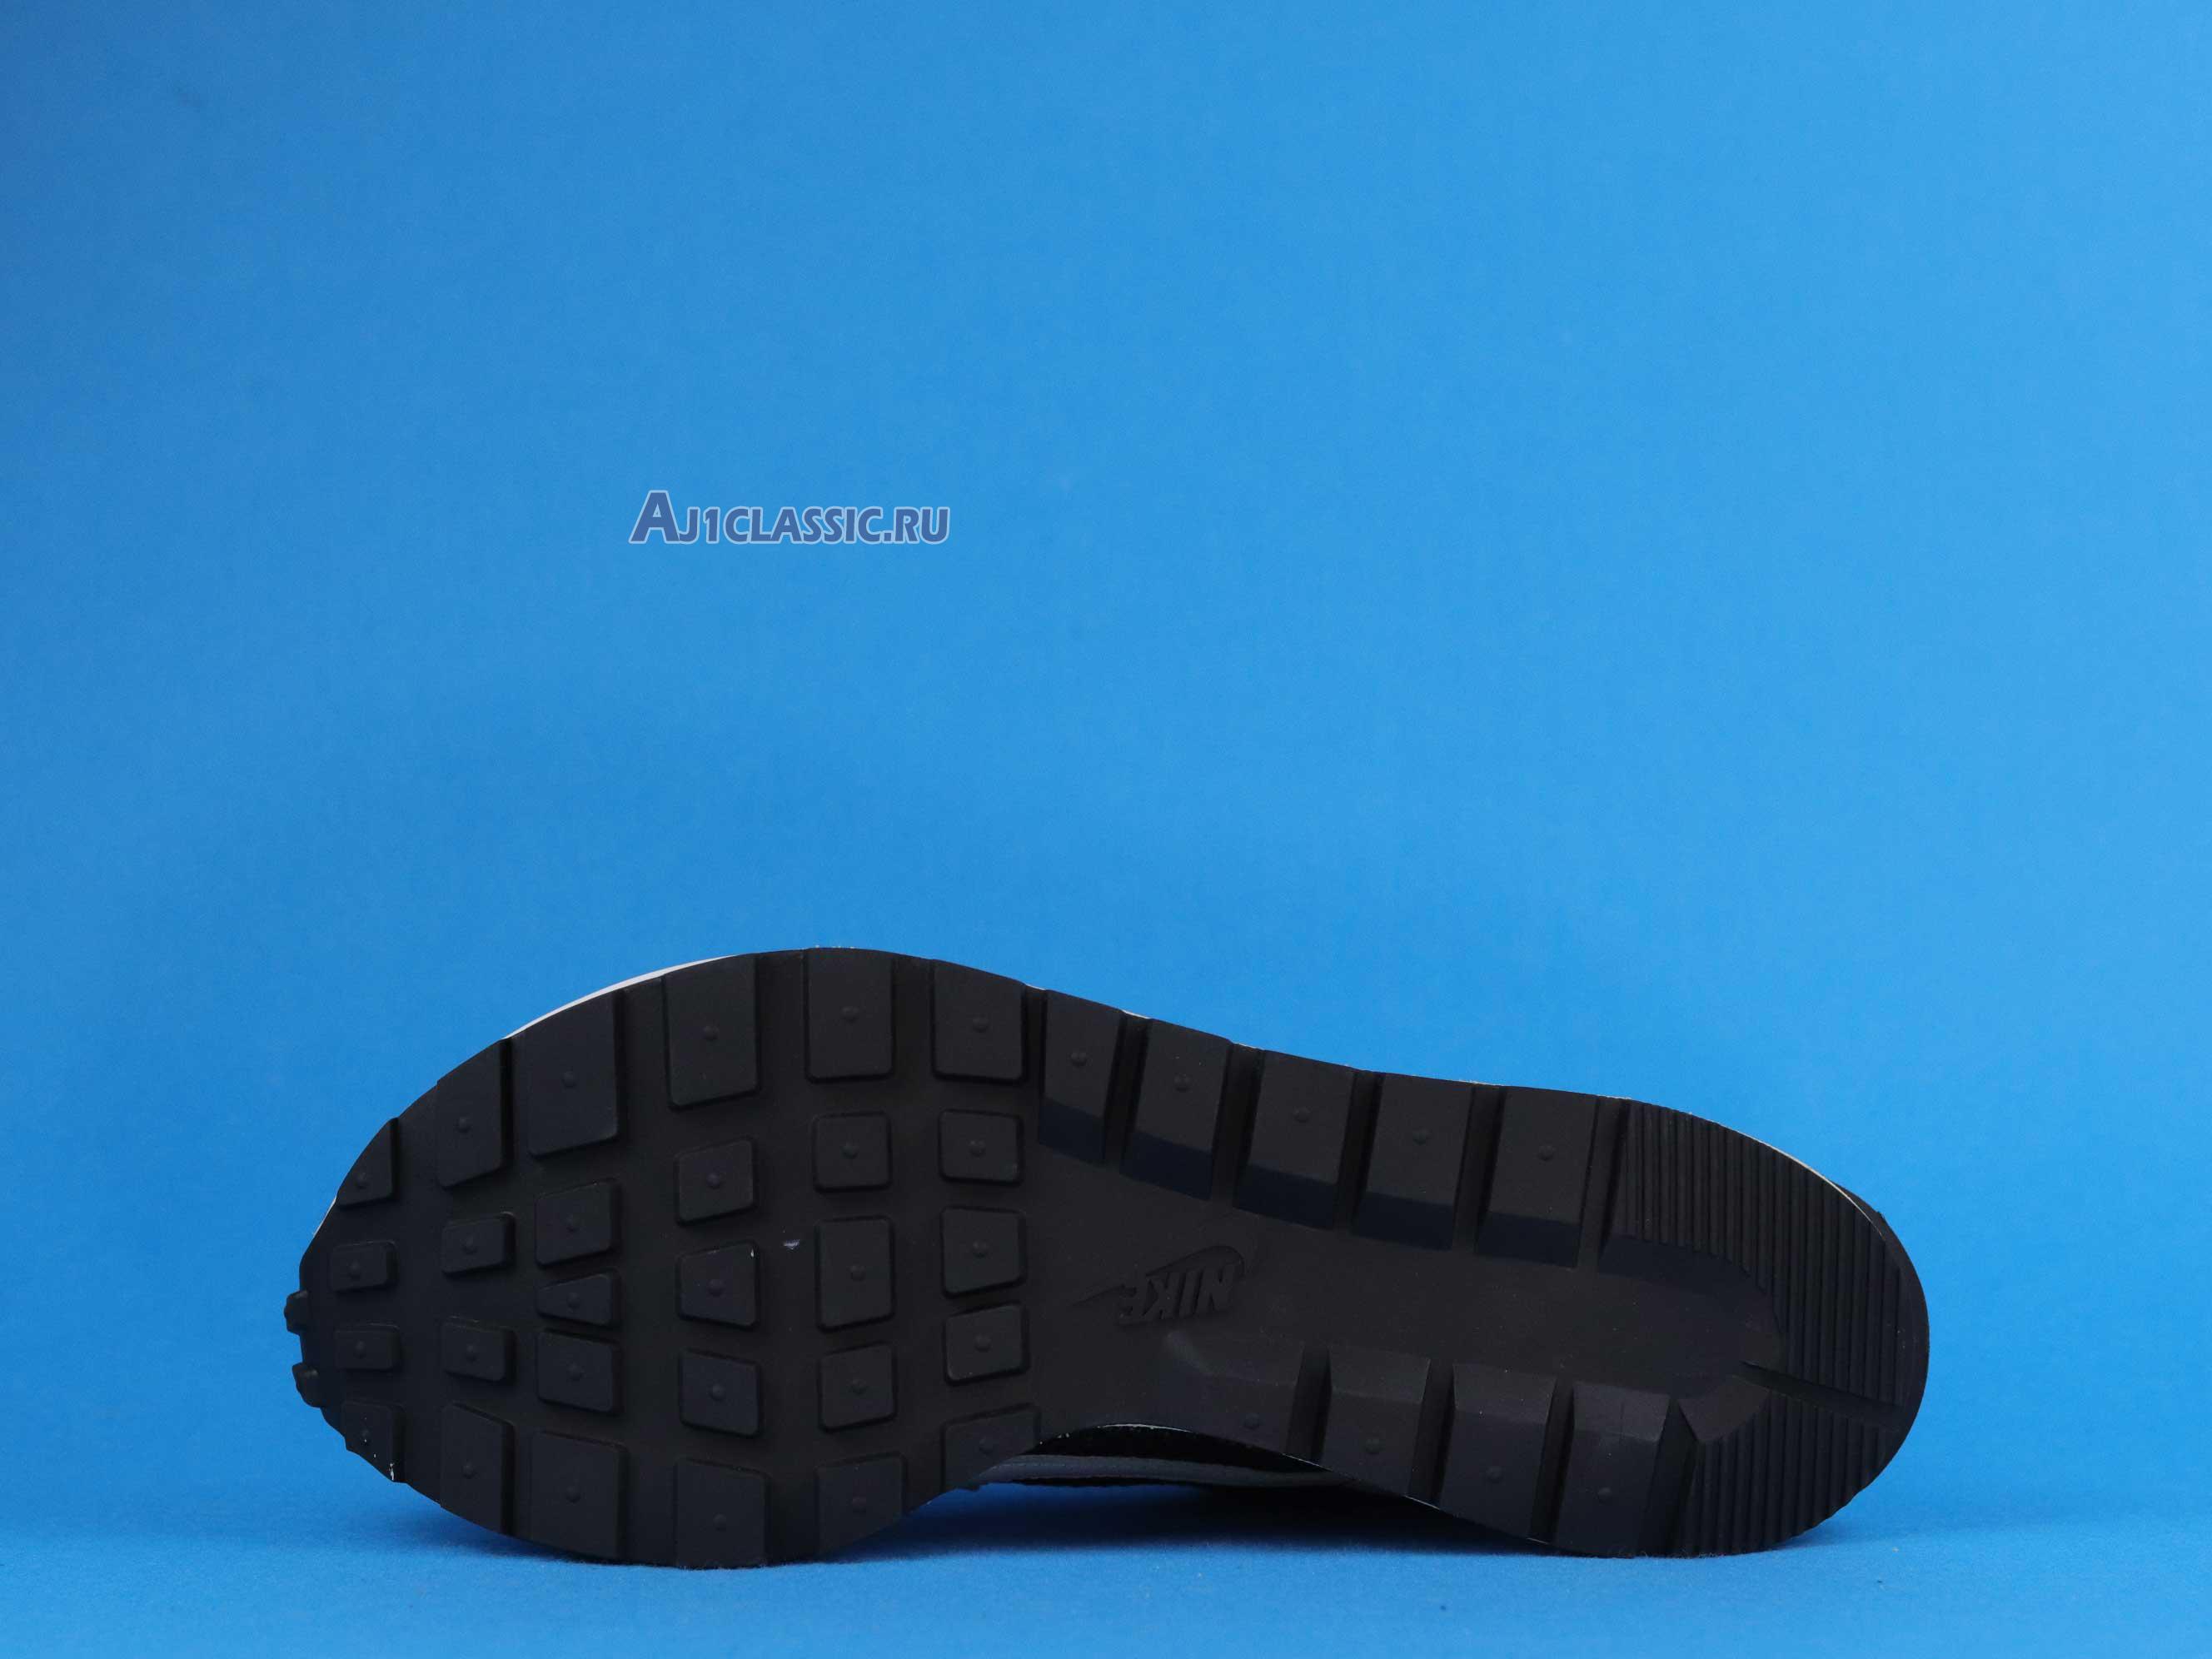 Sacai x Nike VaporWaffle "Black White" CV1363-001